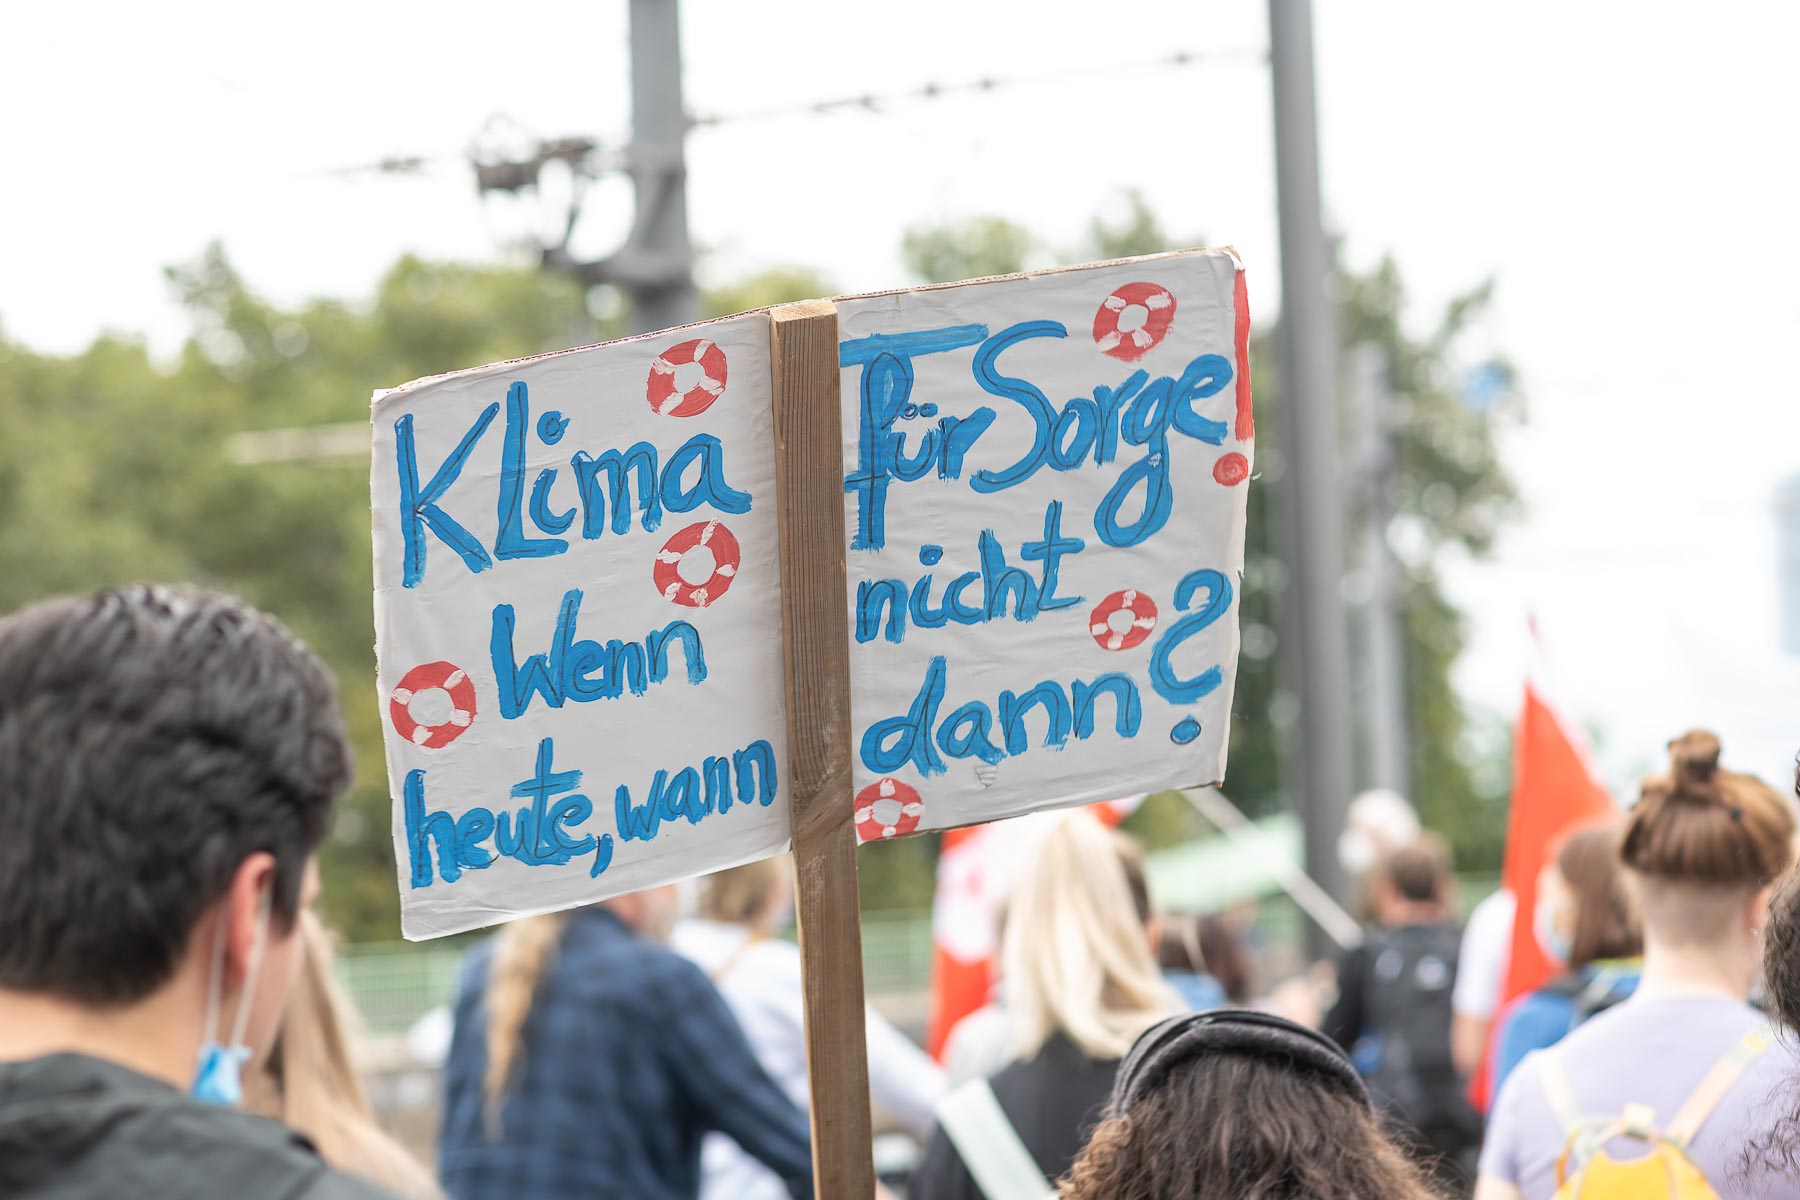 Rechtsrheinisch, Klimastreik von Fridays for Future in Köln. Schilder mit Botschaften werden gezeigt.